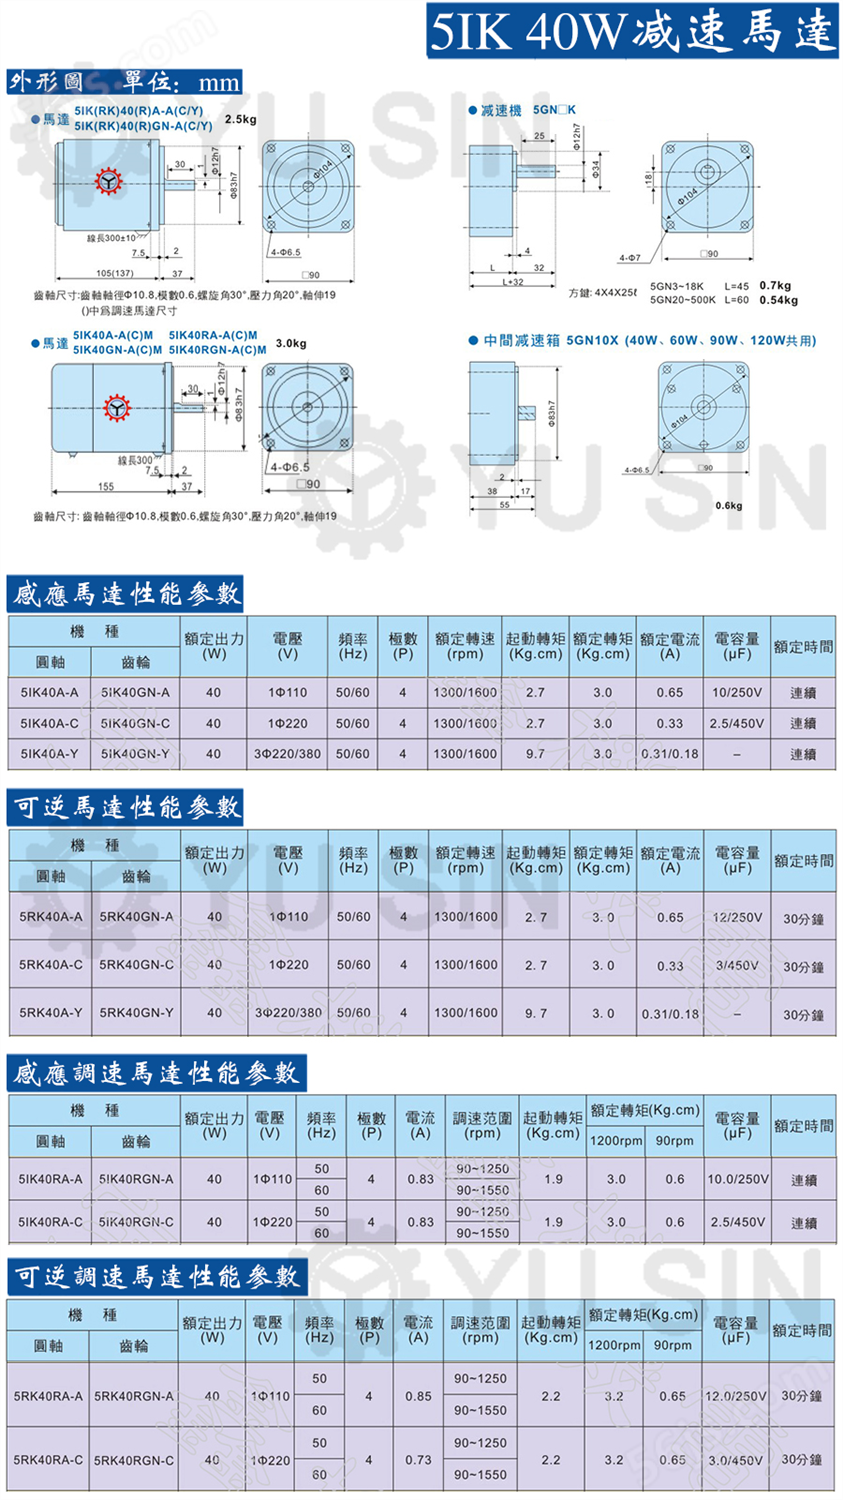 宇鑫5IK40RGN微型调速电机尺寸图